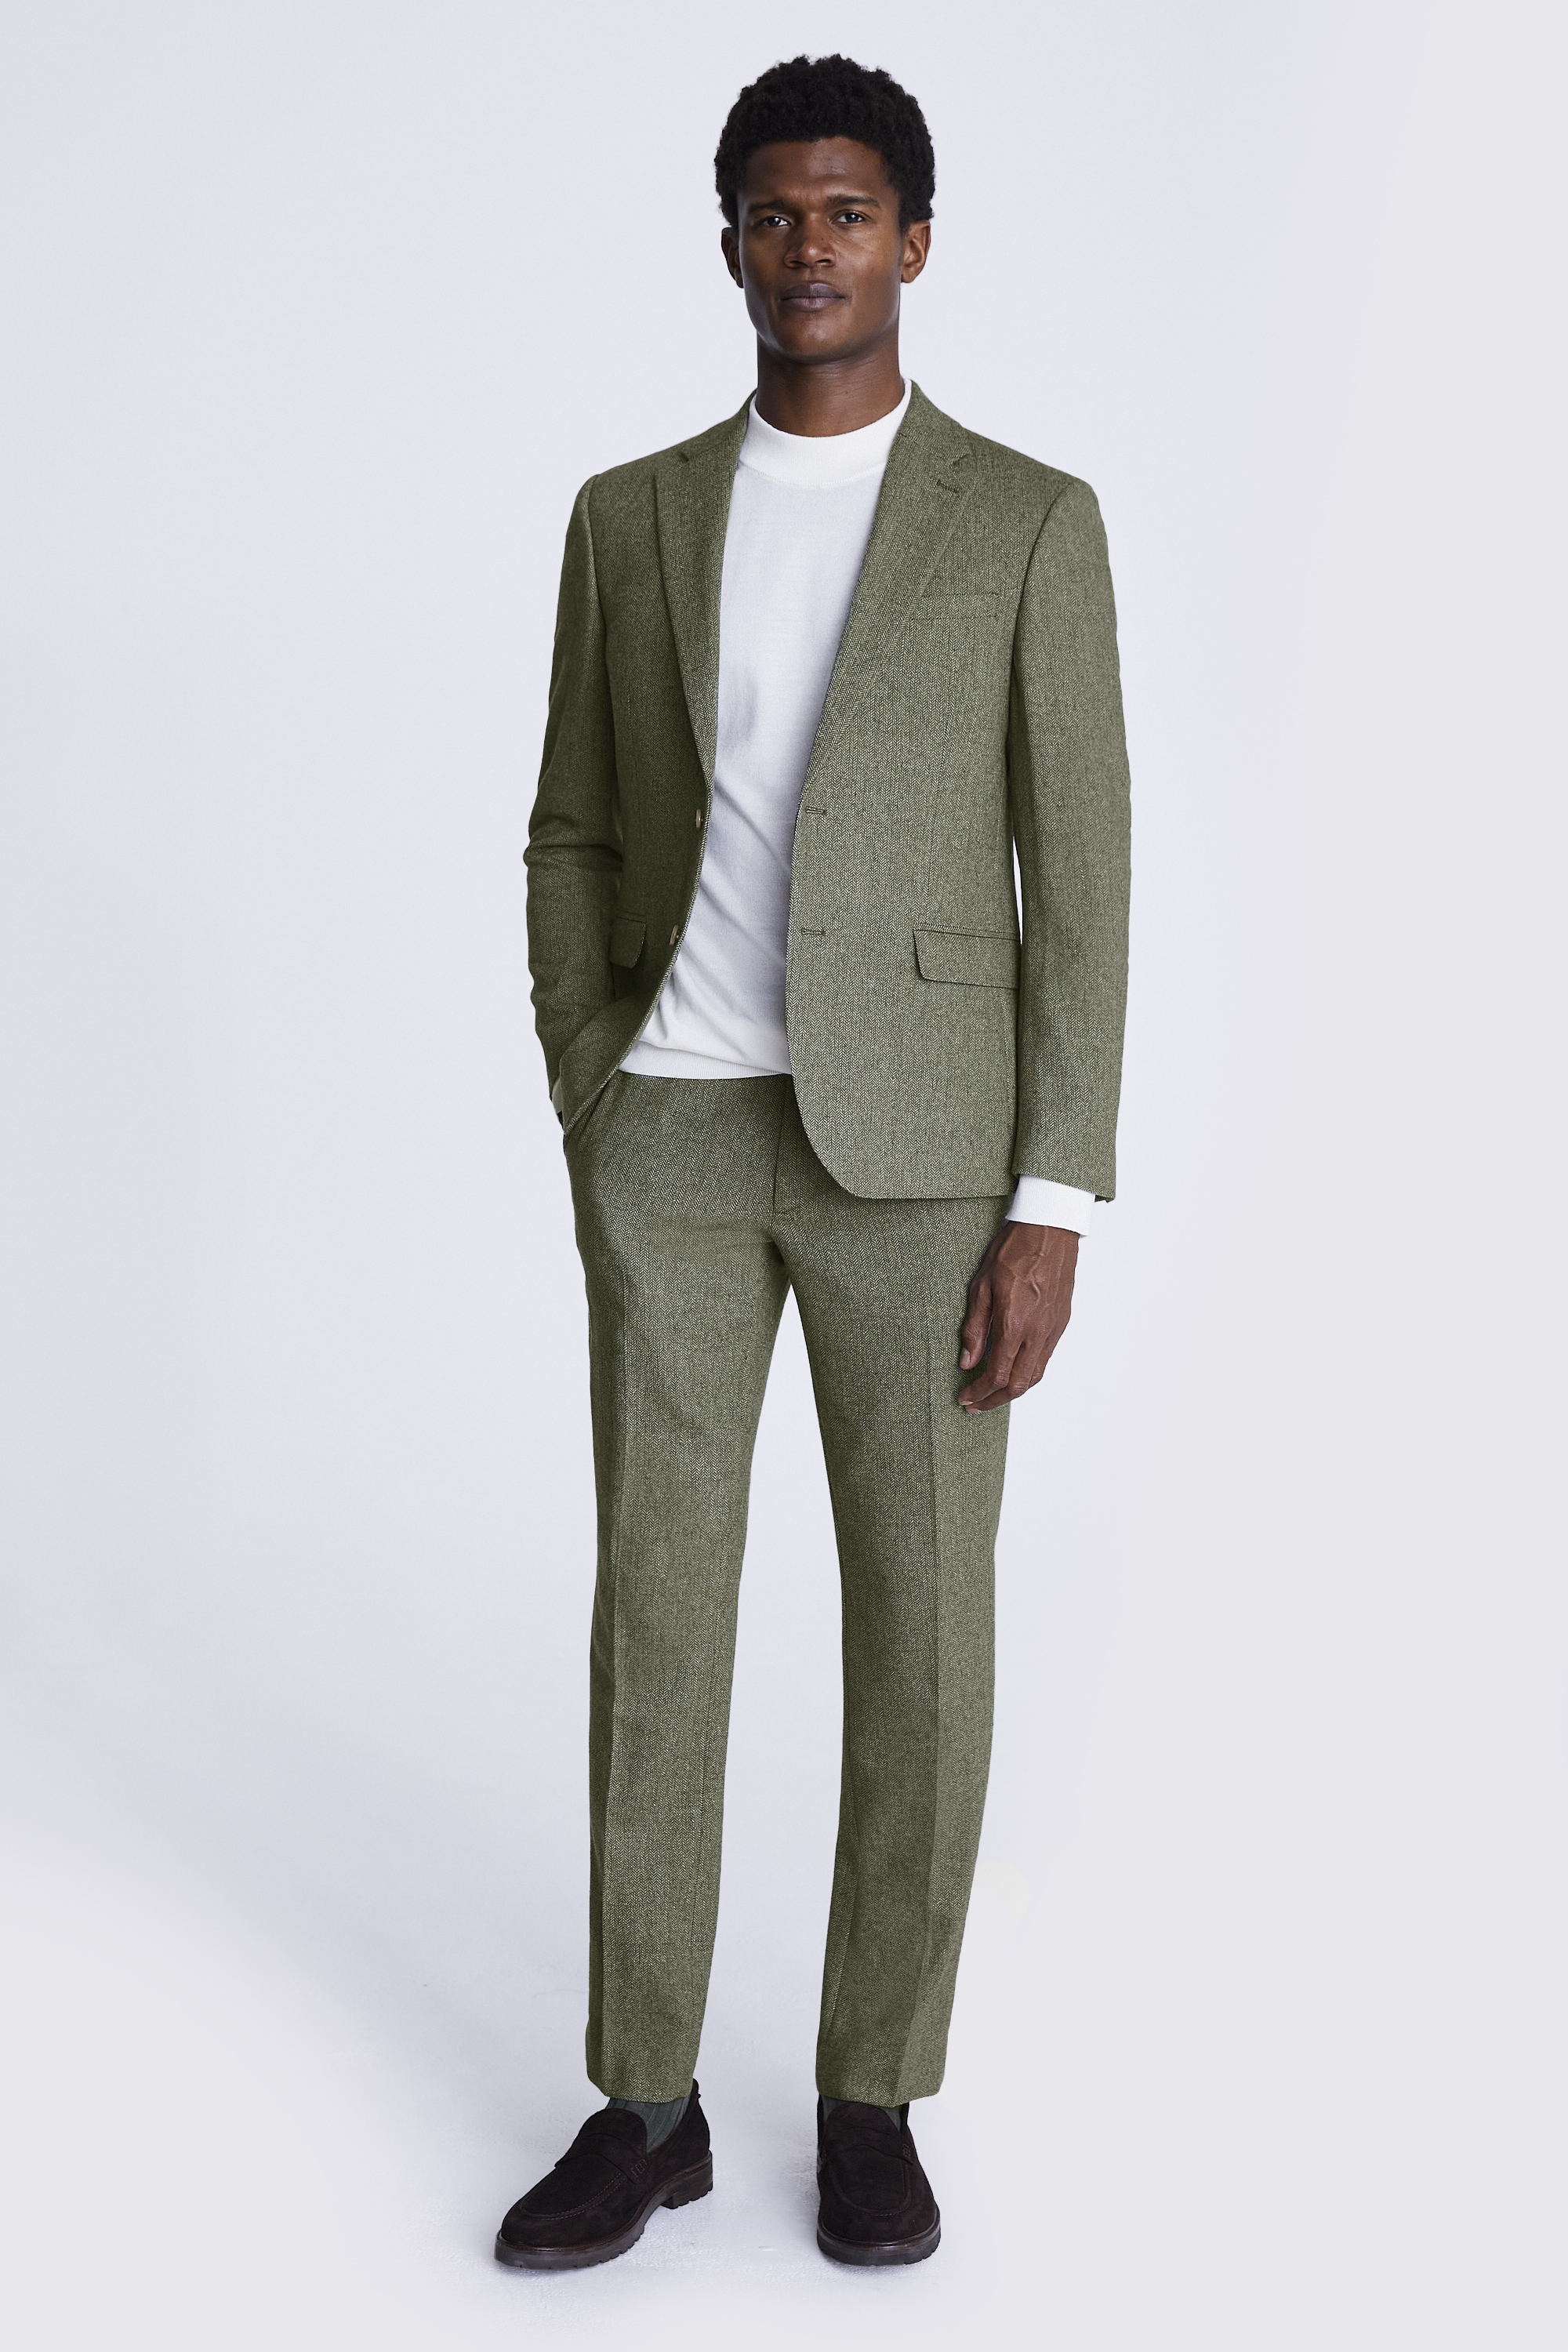 Men's Blazer Jacket Light Beige Tweed Check Slim Fit Vintage Formal Wedding Size 38